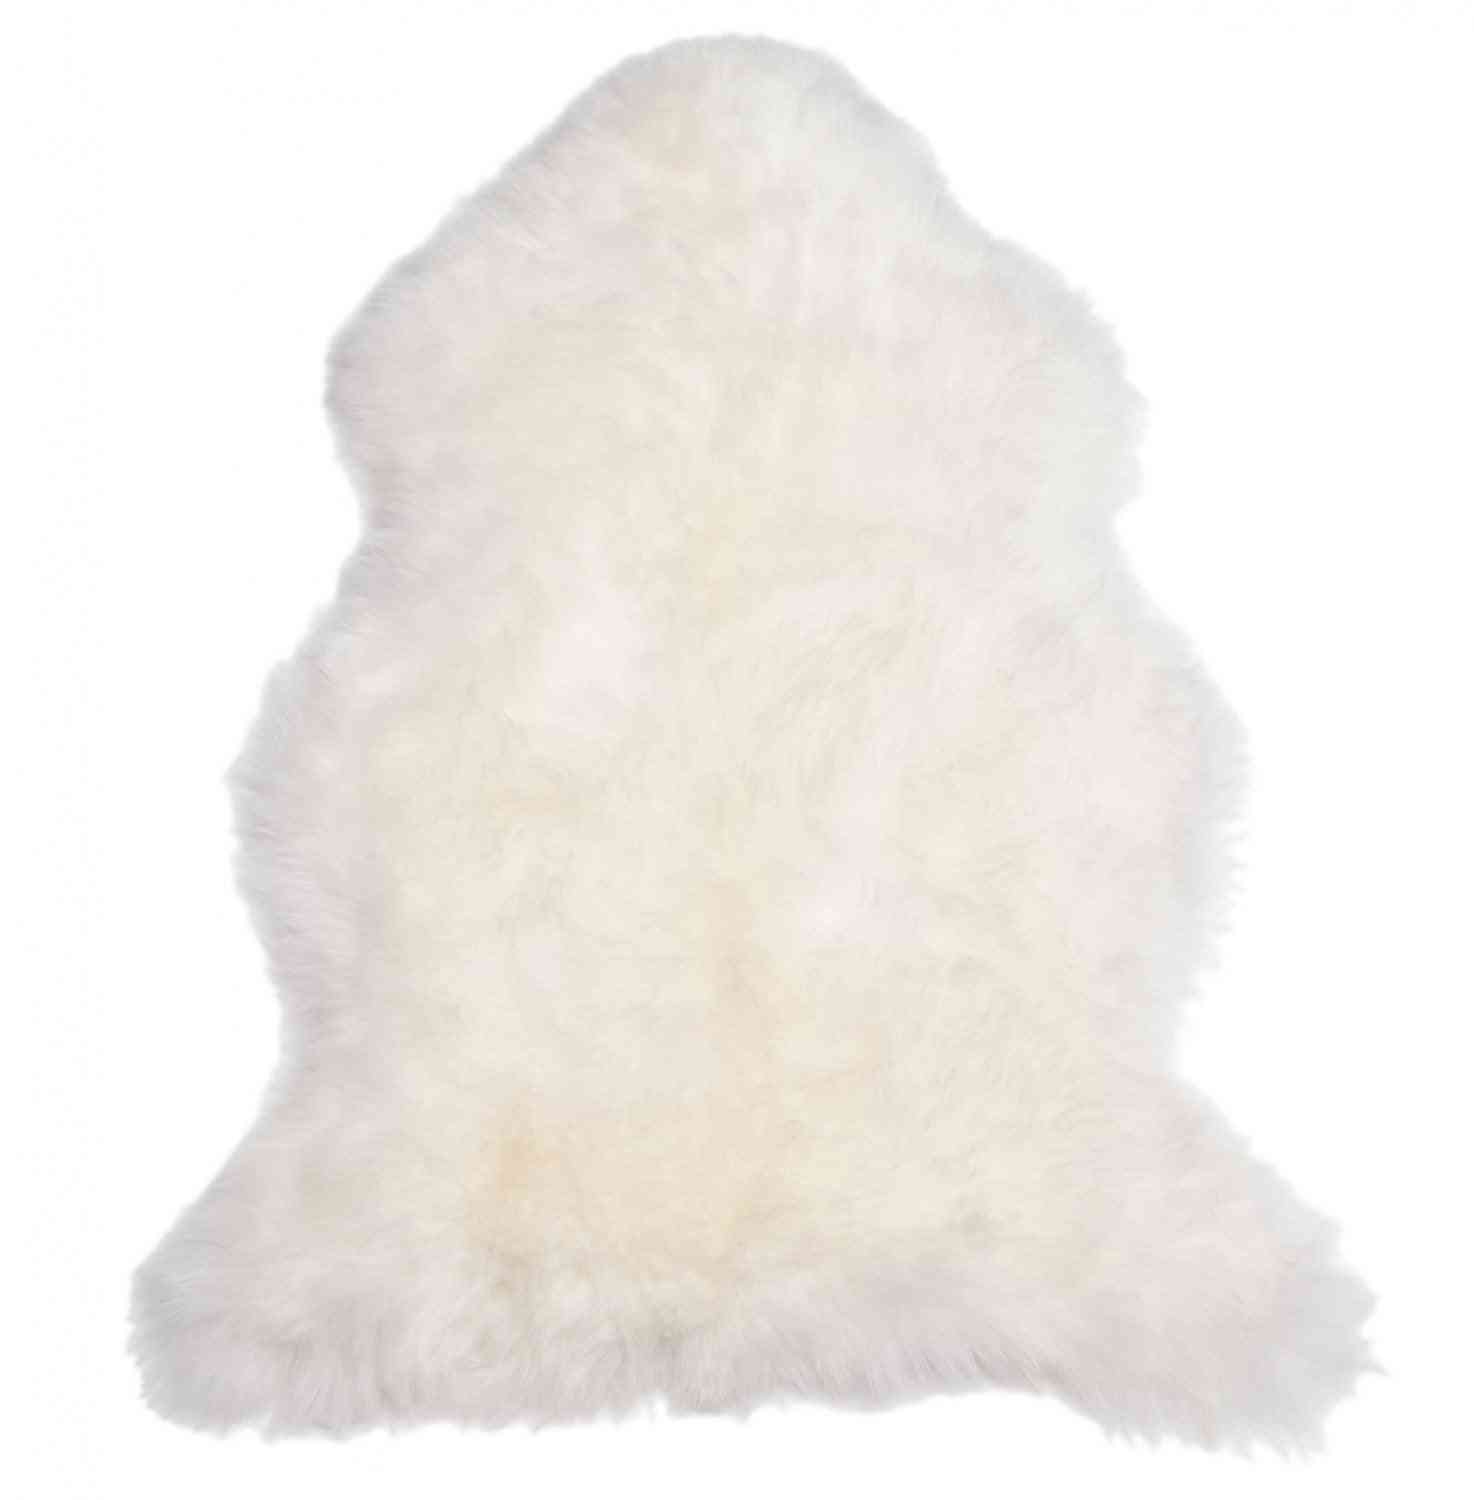 Fluffy Sheepskin, Lambskin Rug